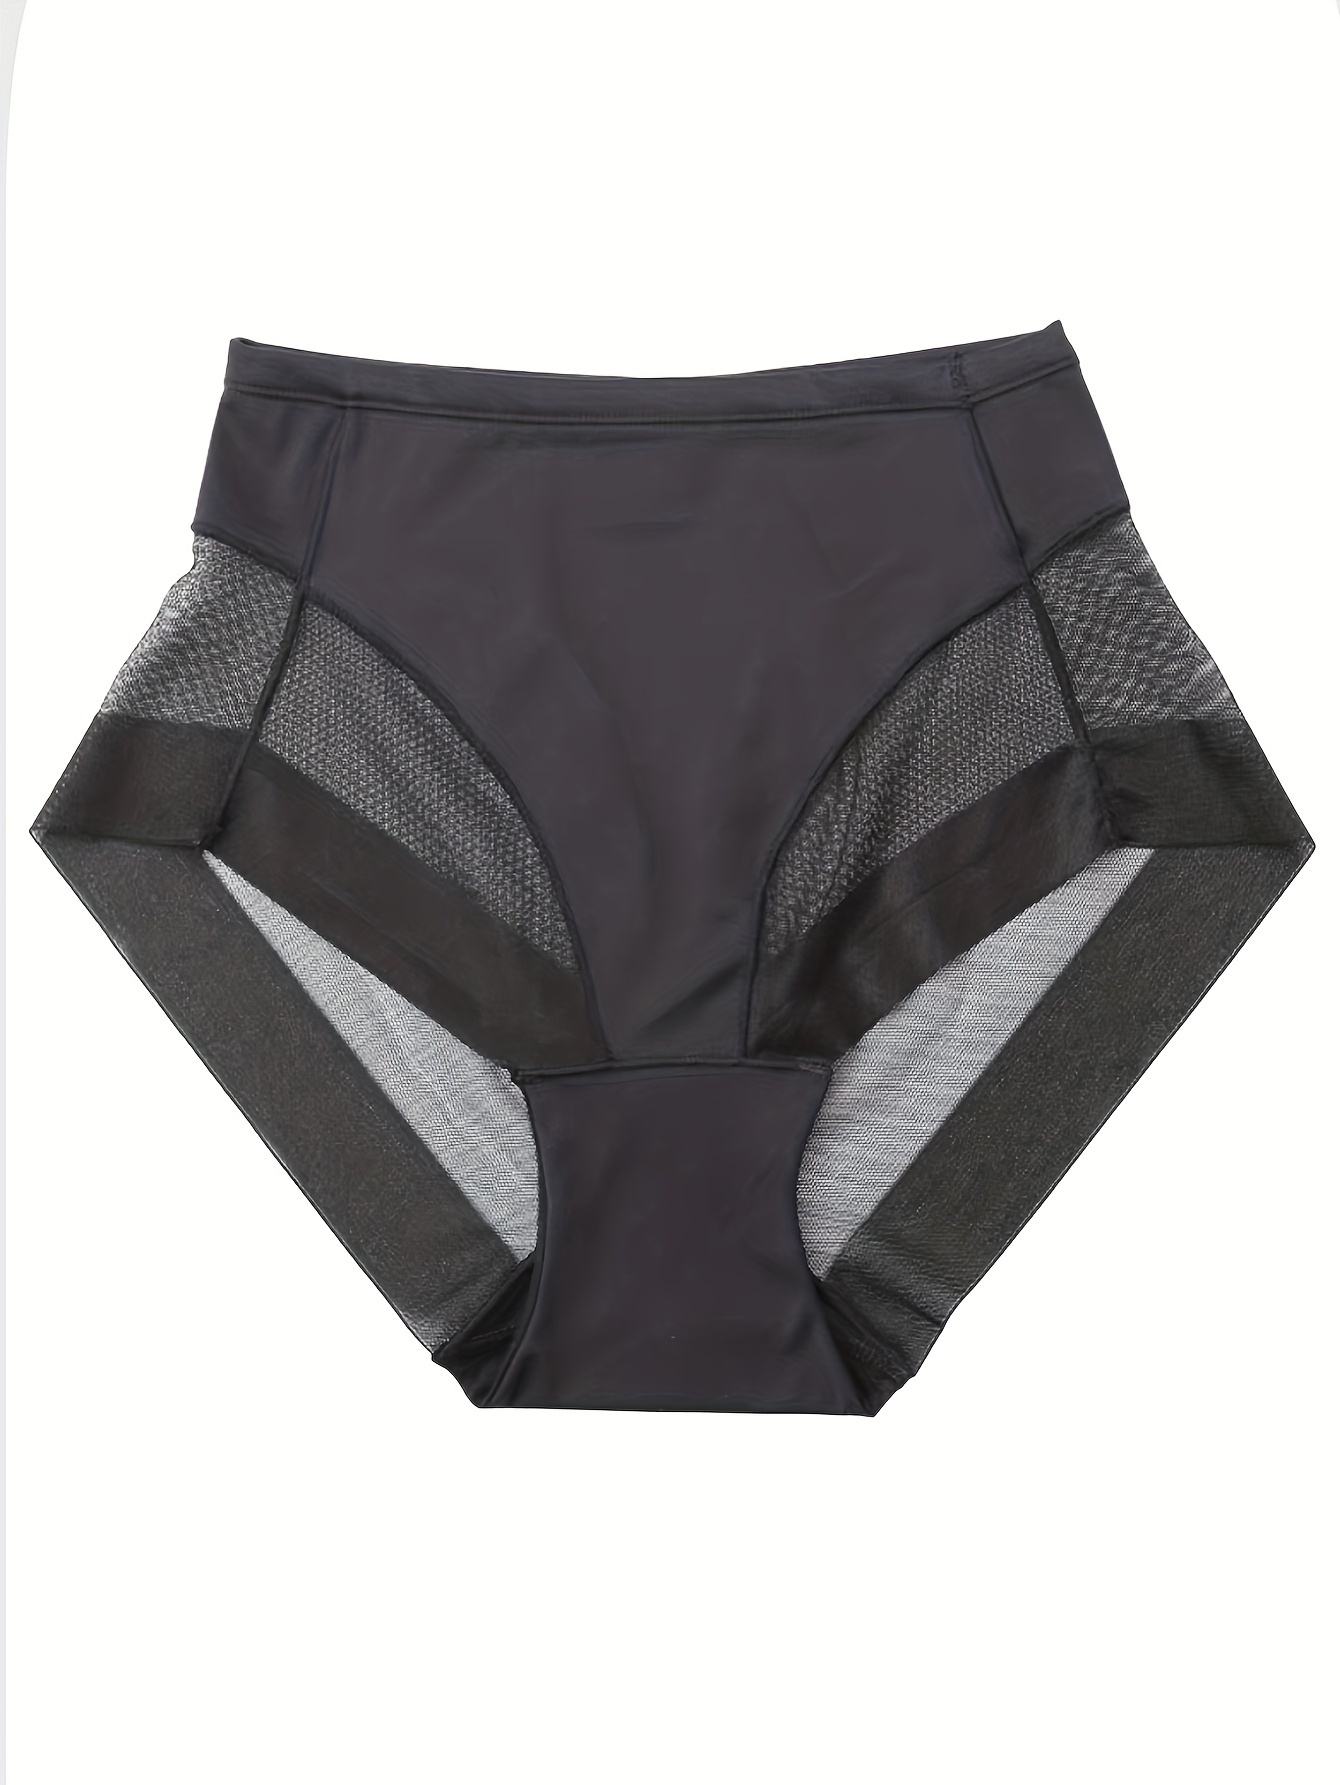 Spandex Underwear Women - Free Returns Within 90 Days - Temu